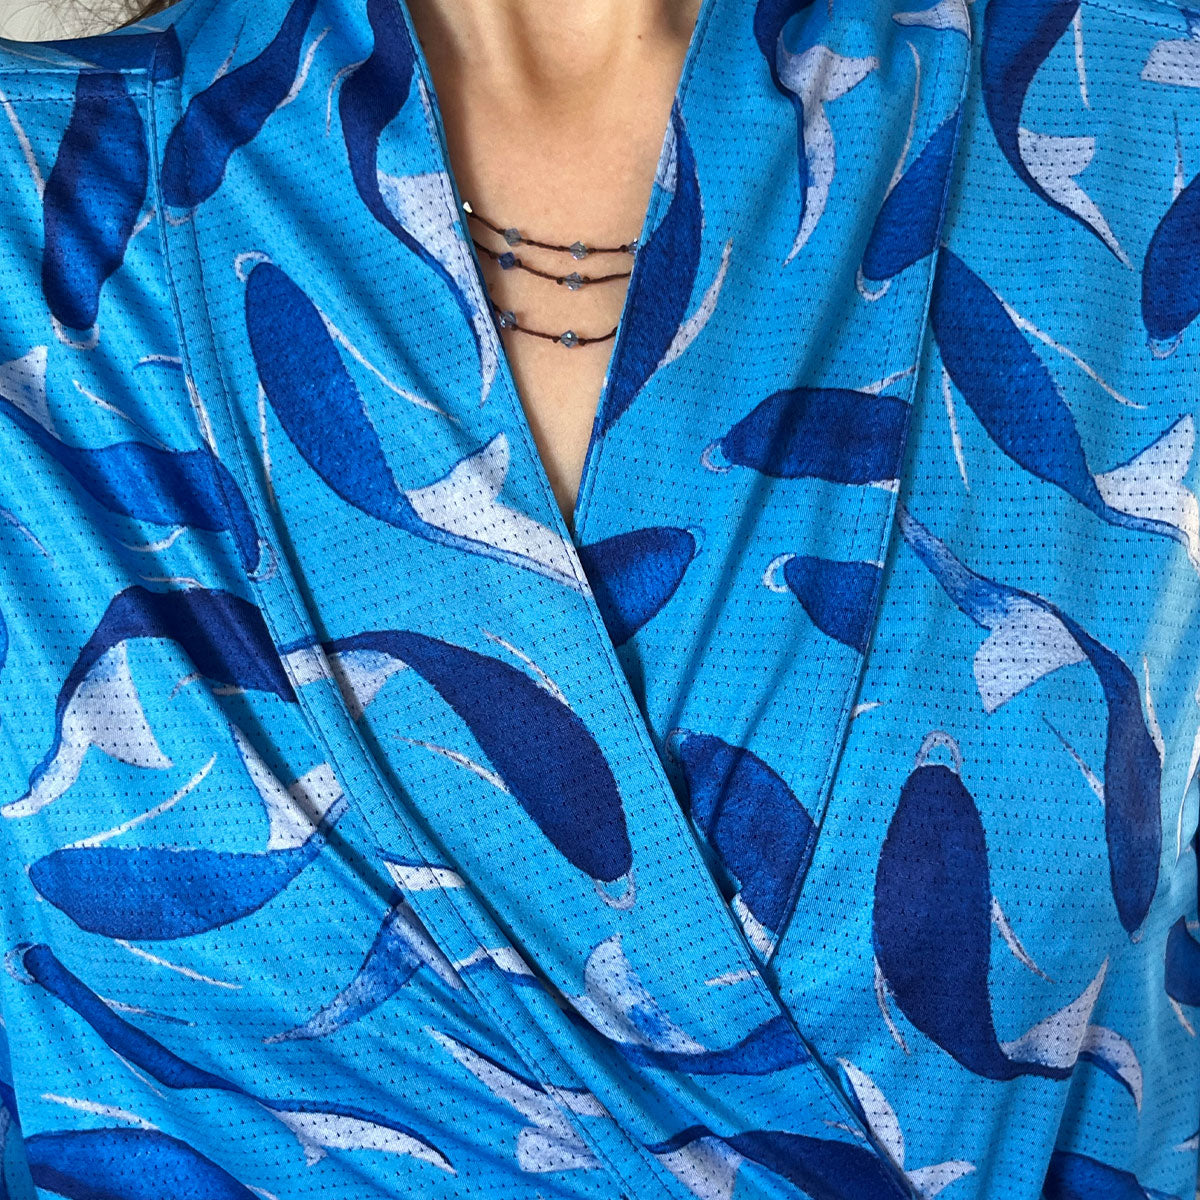 Kimono Dupla Face Azul